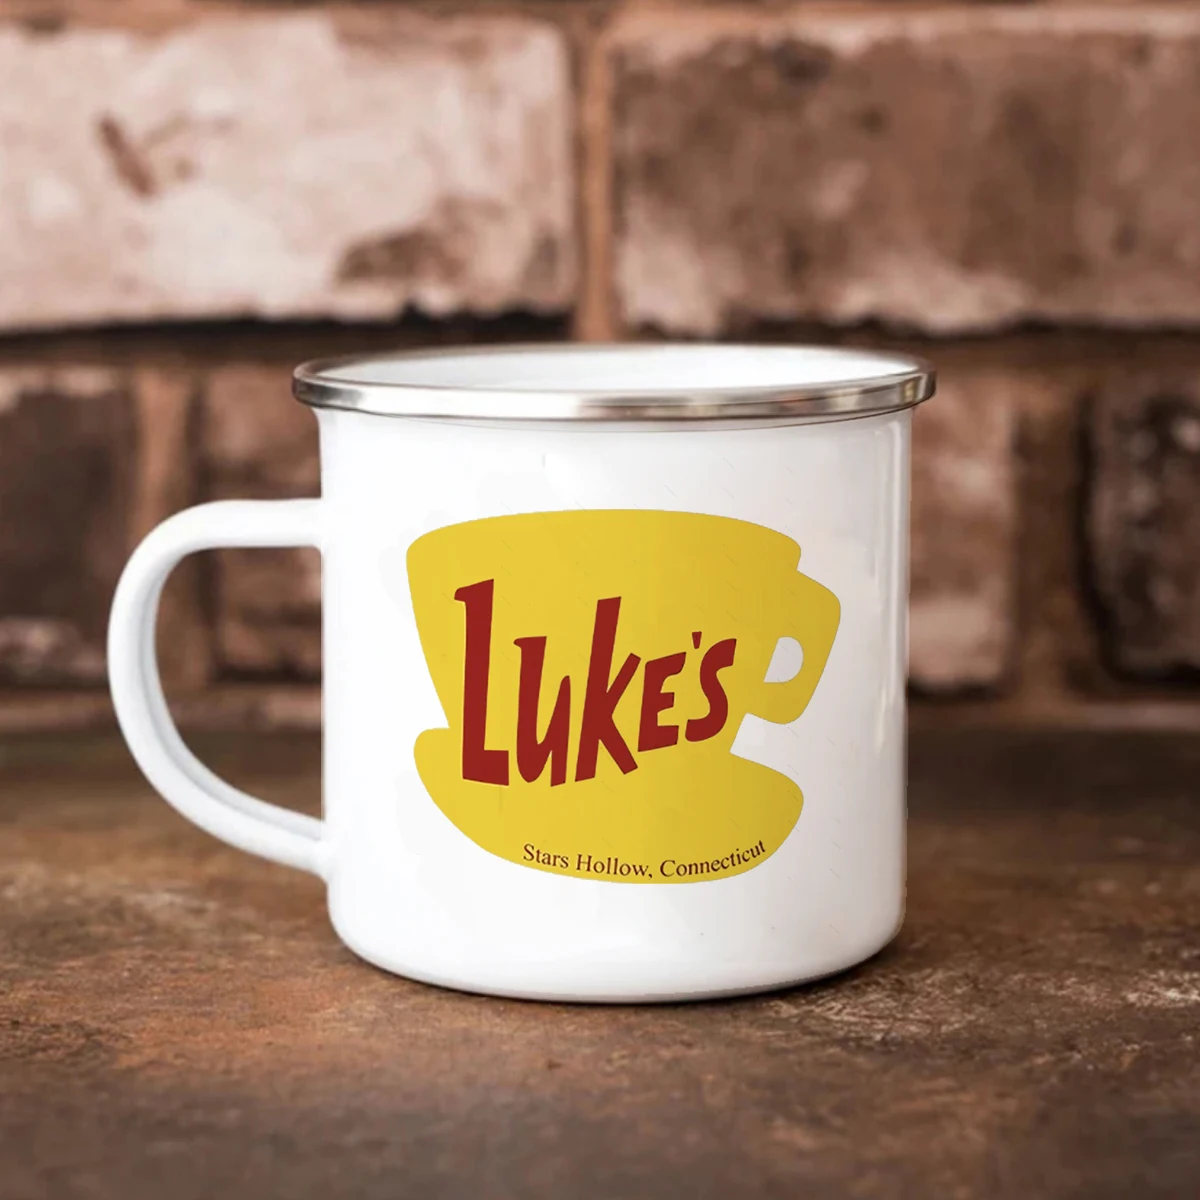 Luke's Diner Coffee Mugs Enamel Cup Reusable Eco Friendly Metal Traver Tea Milk Beer Mug